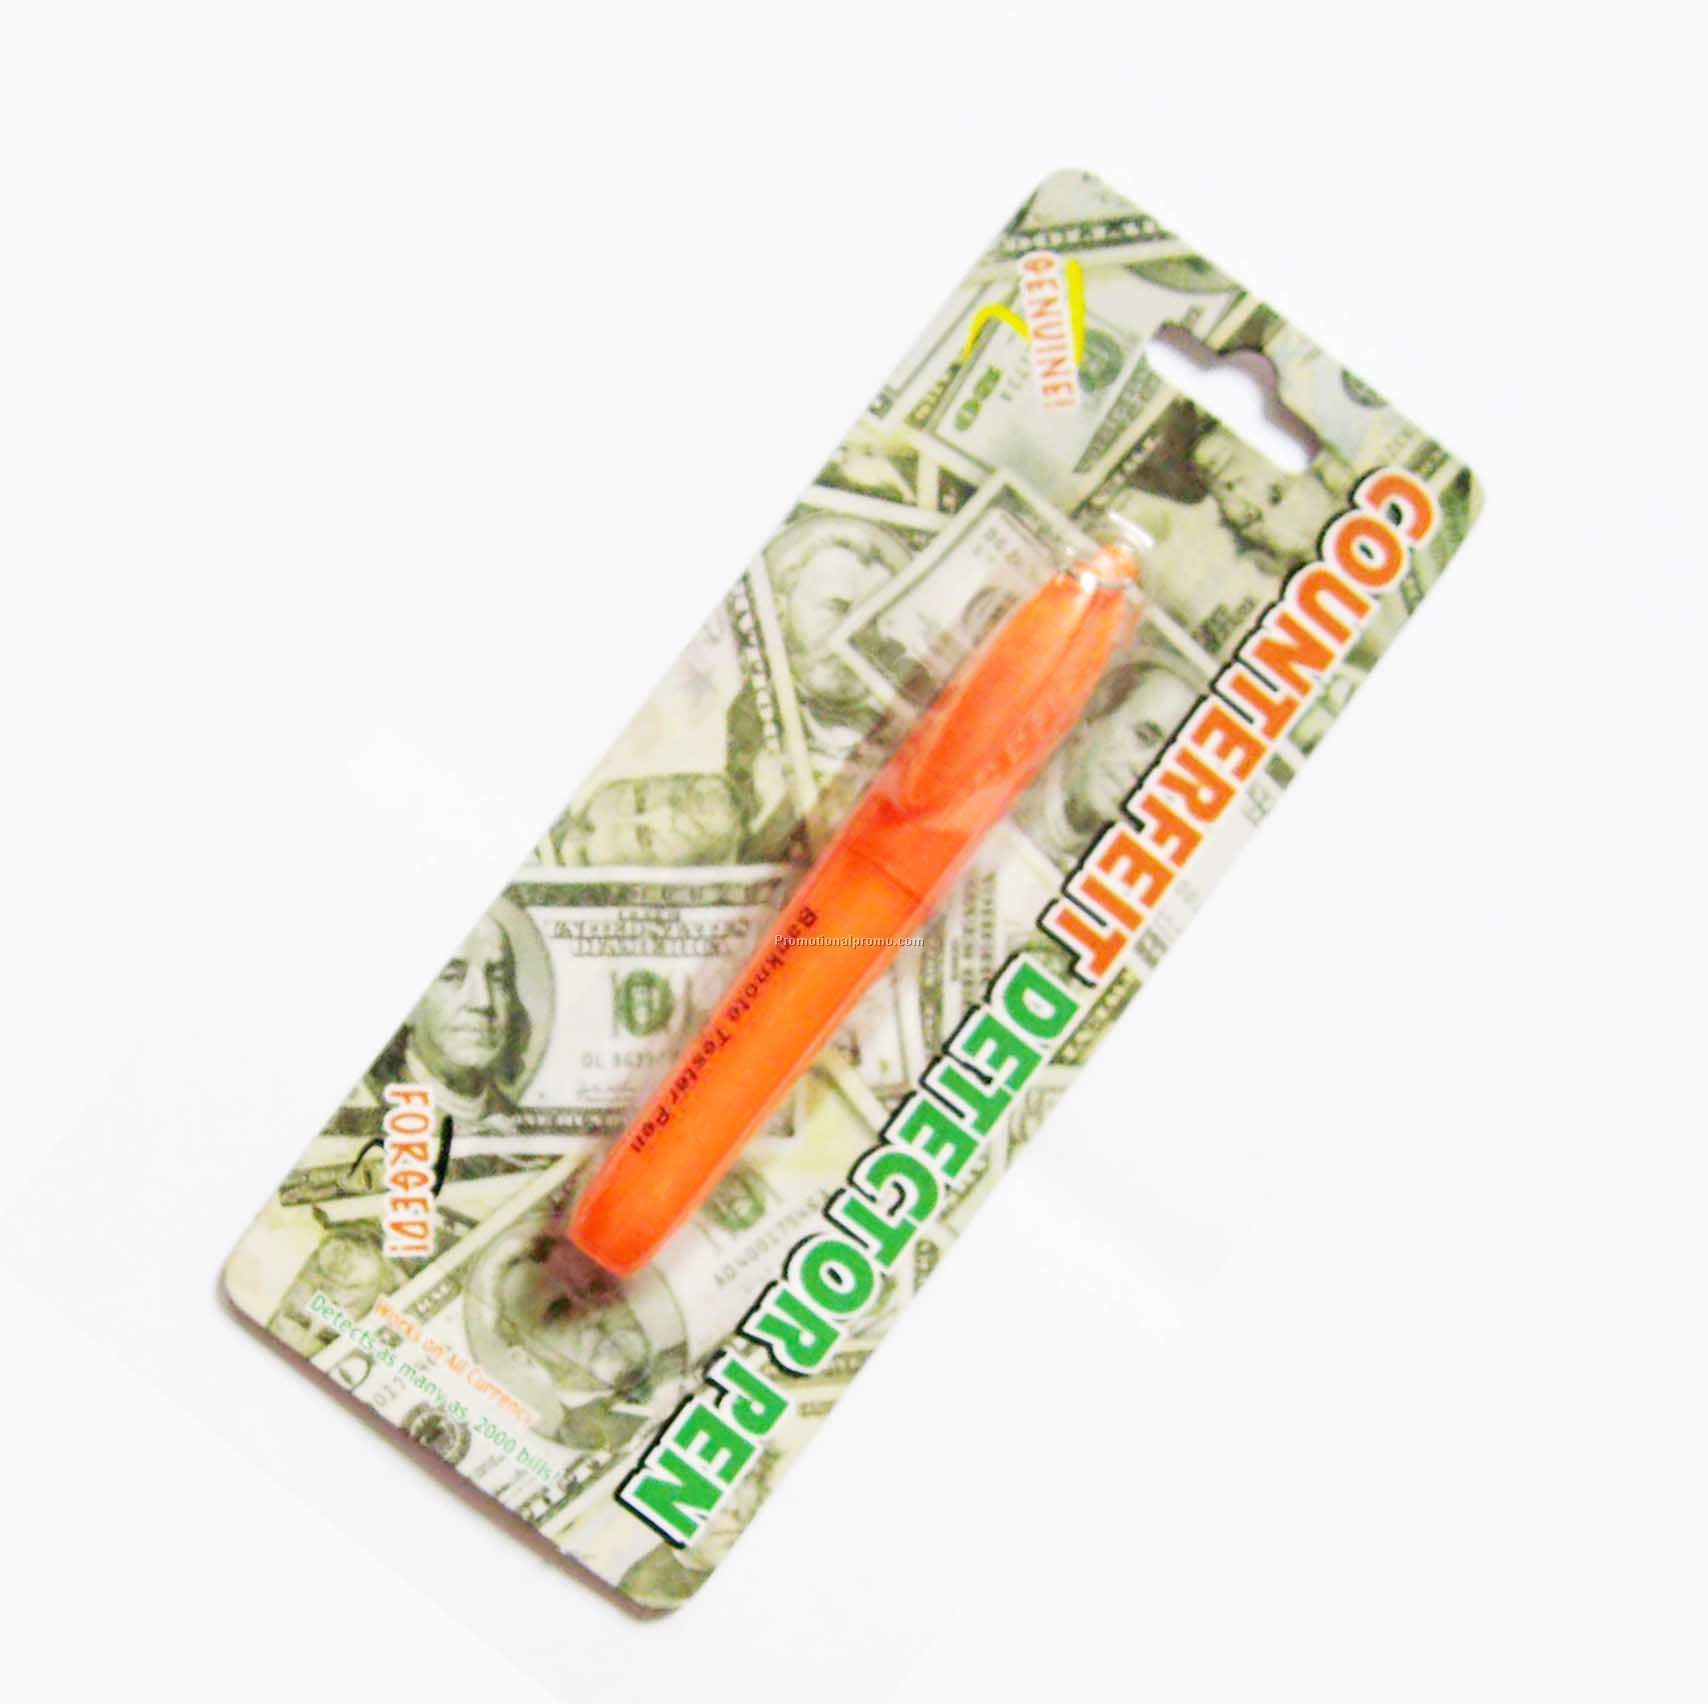 Currency detector pen